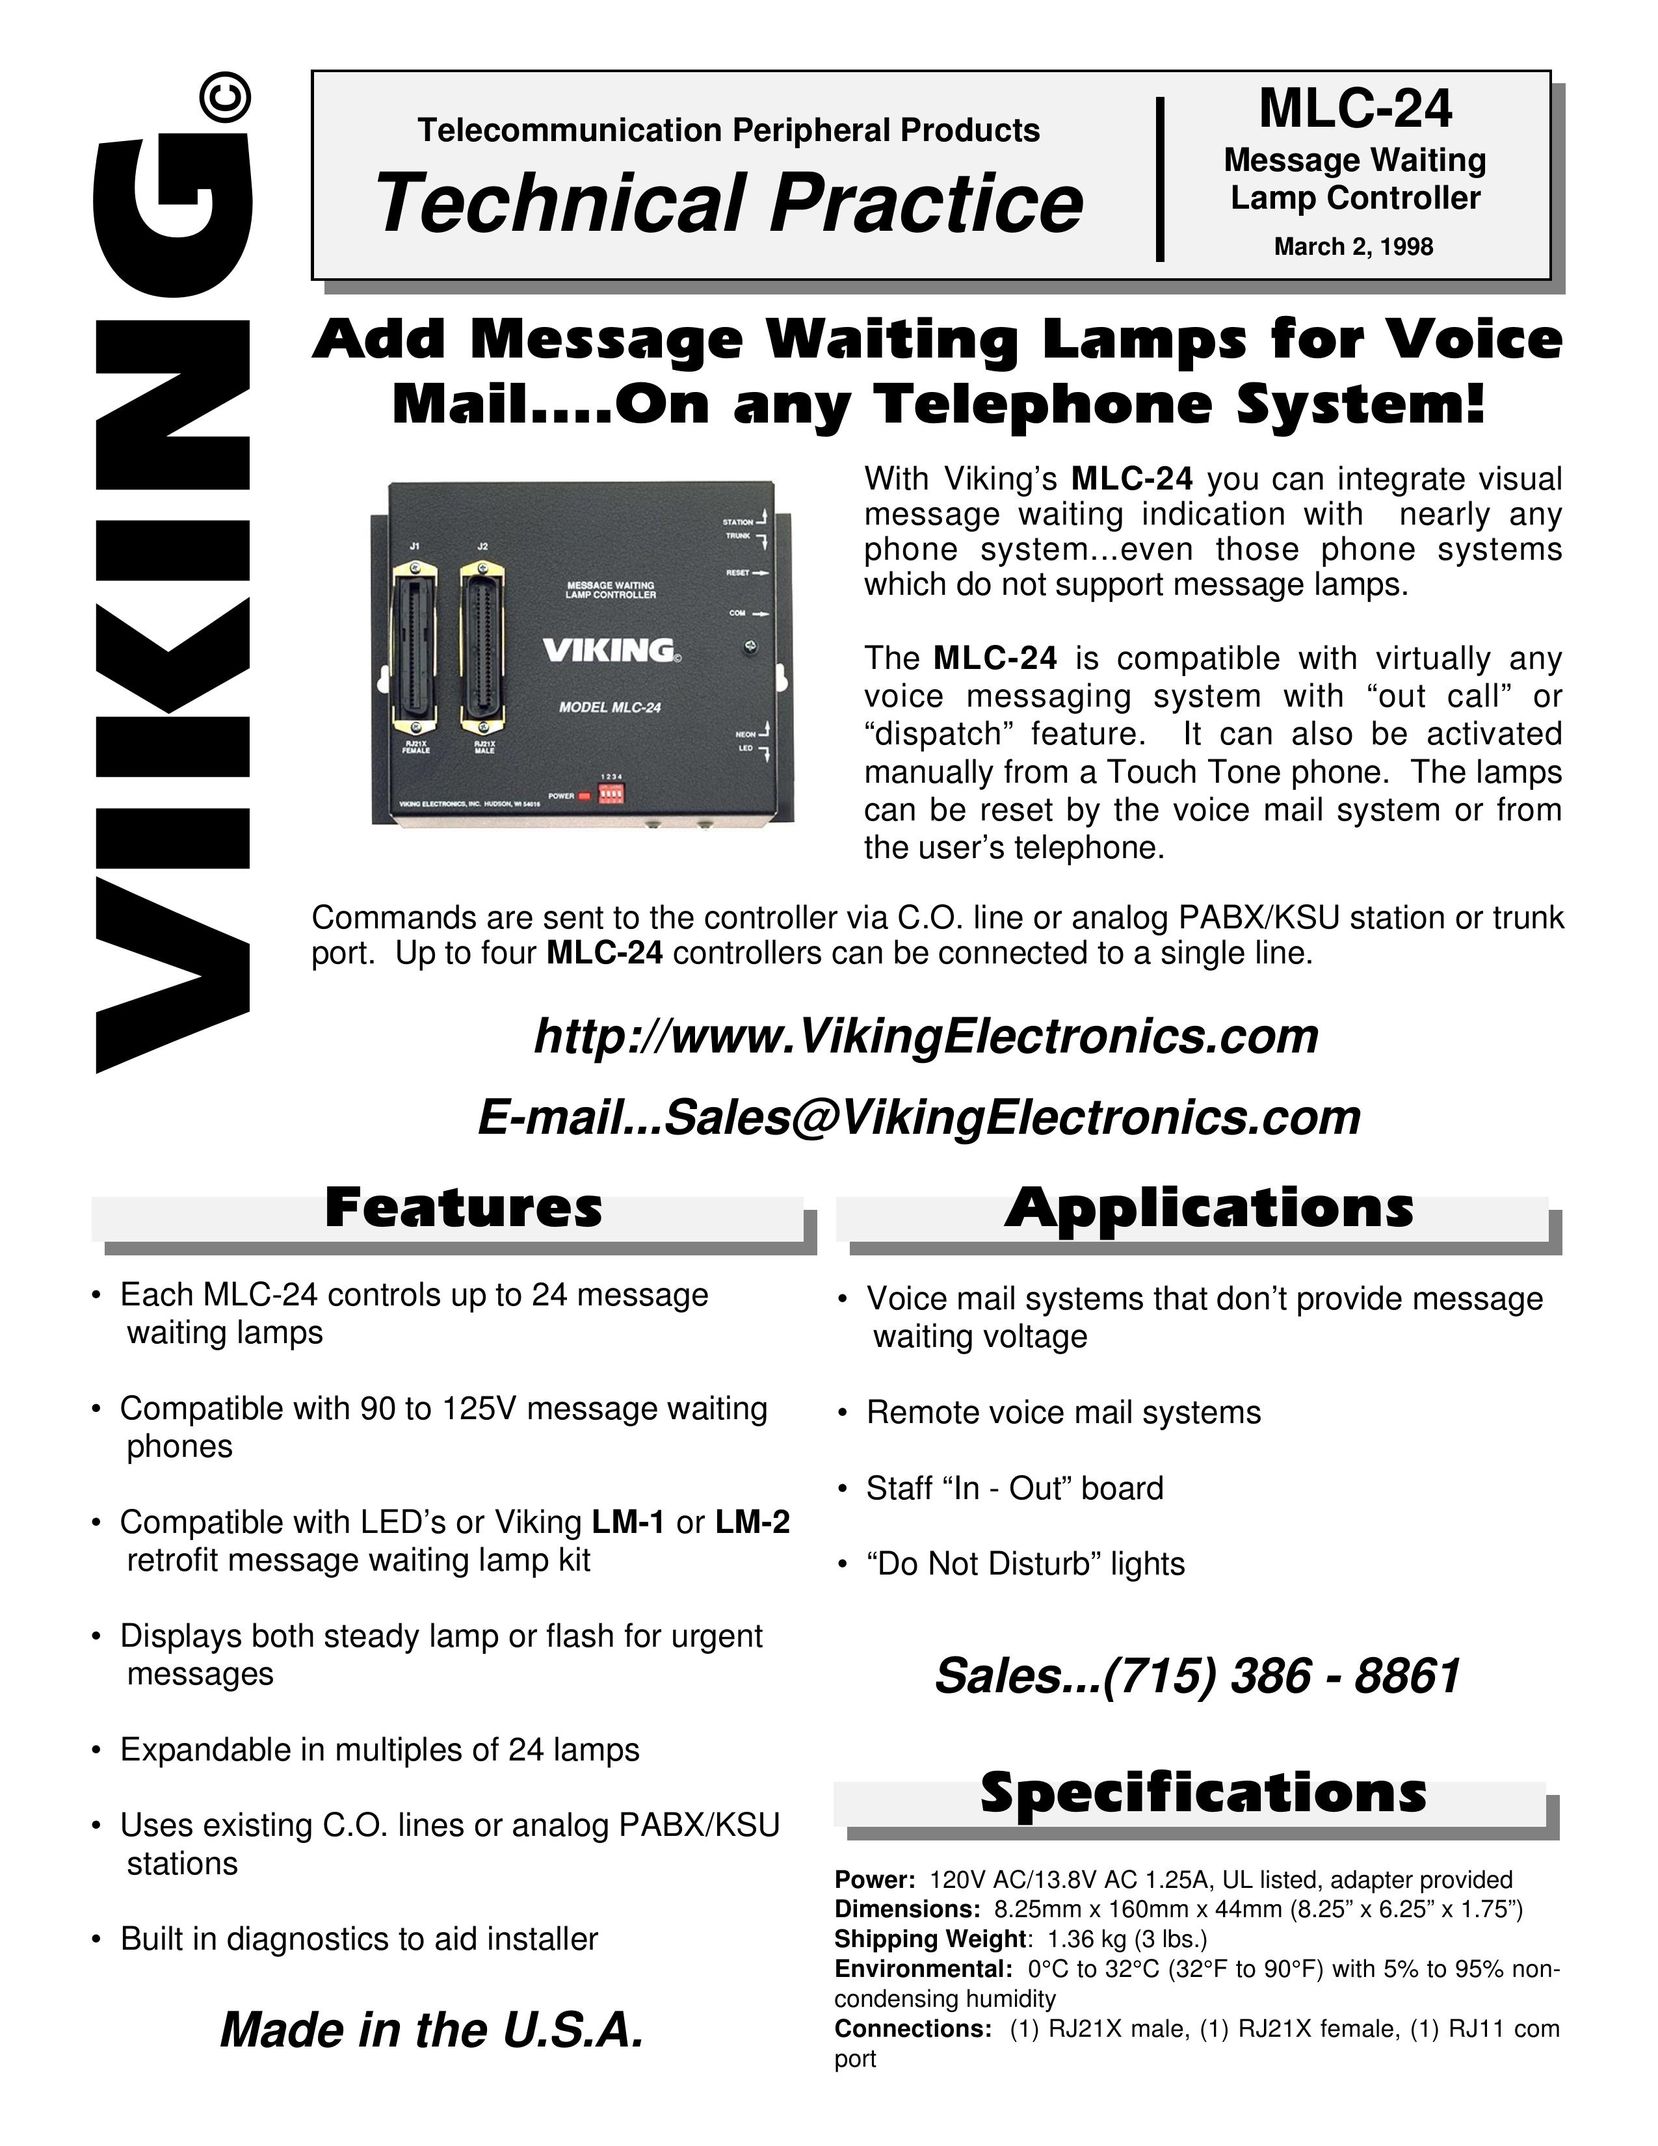 Viking Electronics MLC-24 Answering Machine User Manual